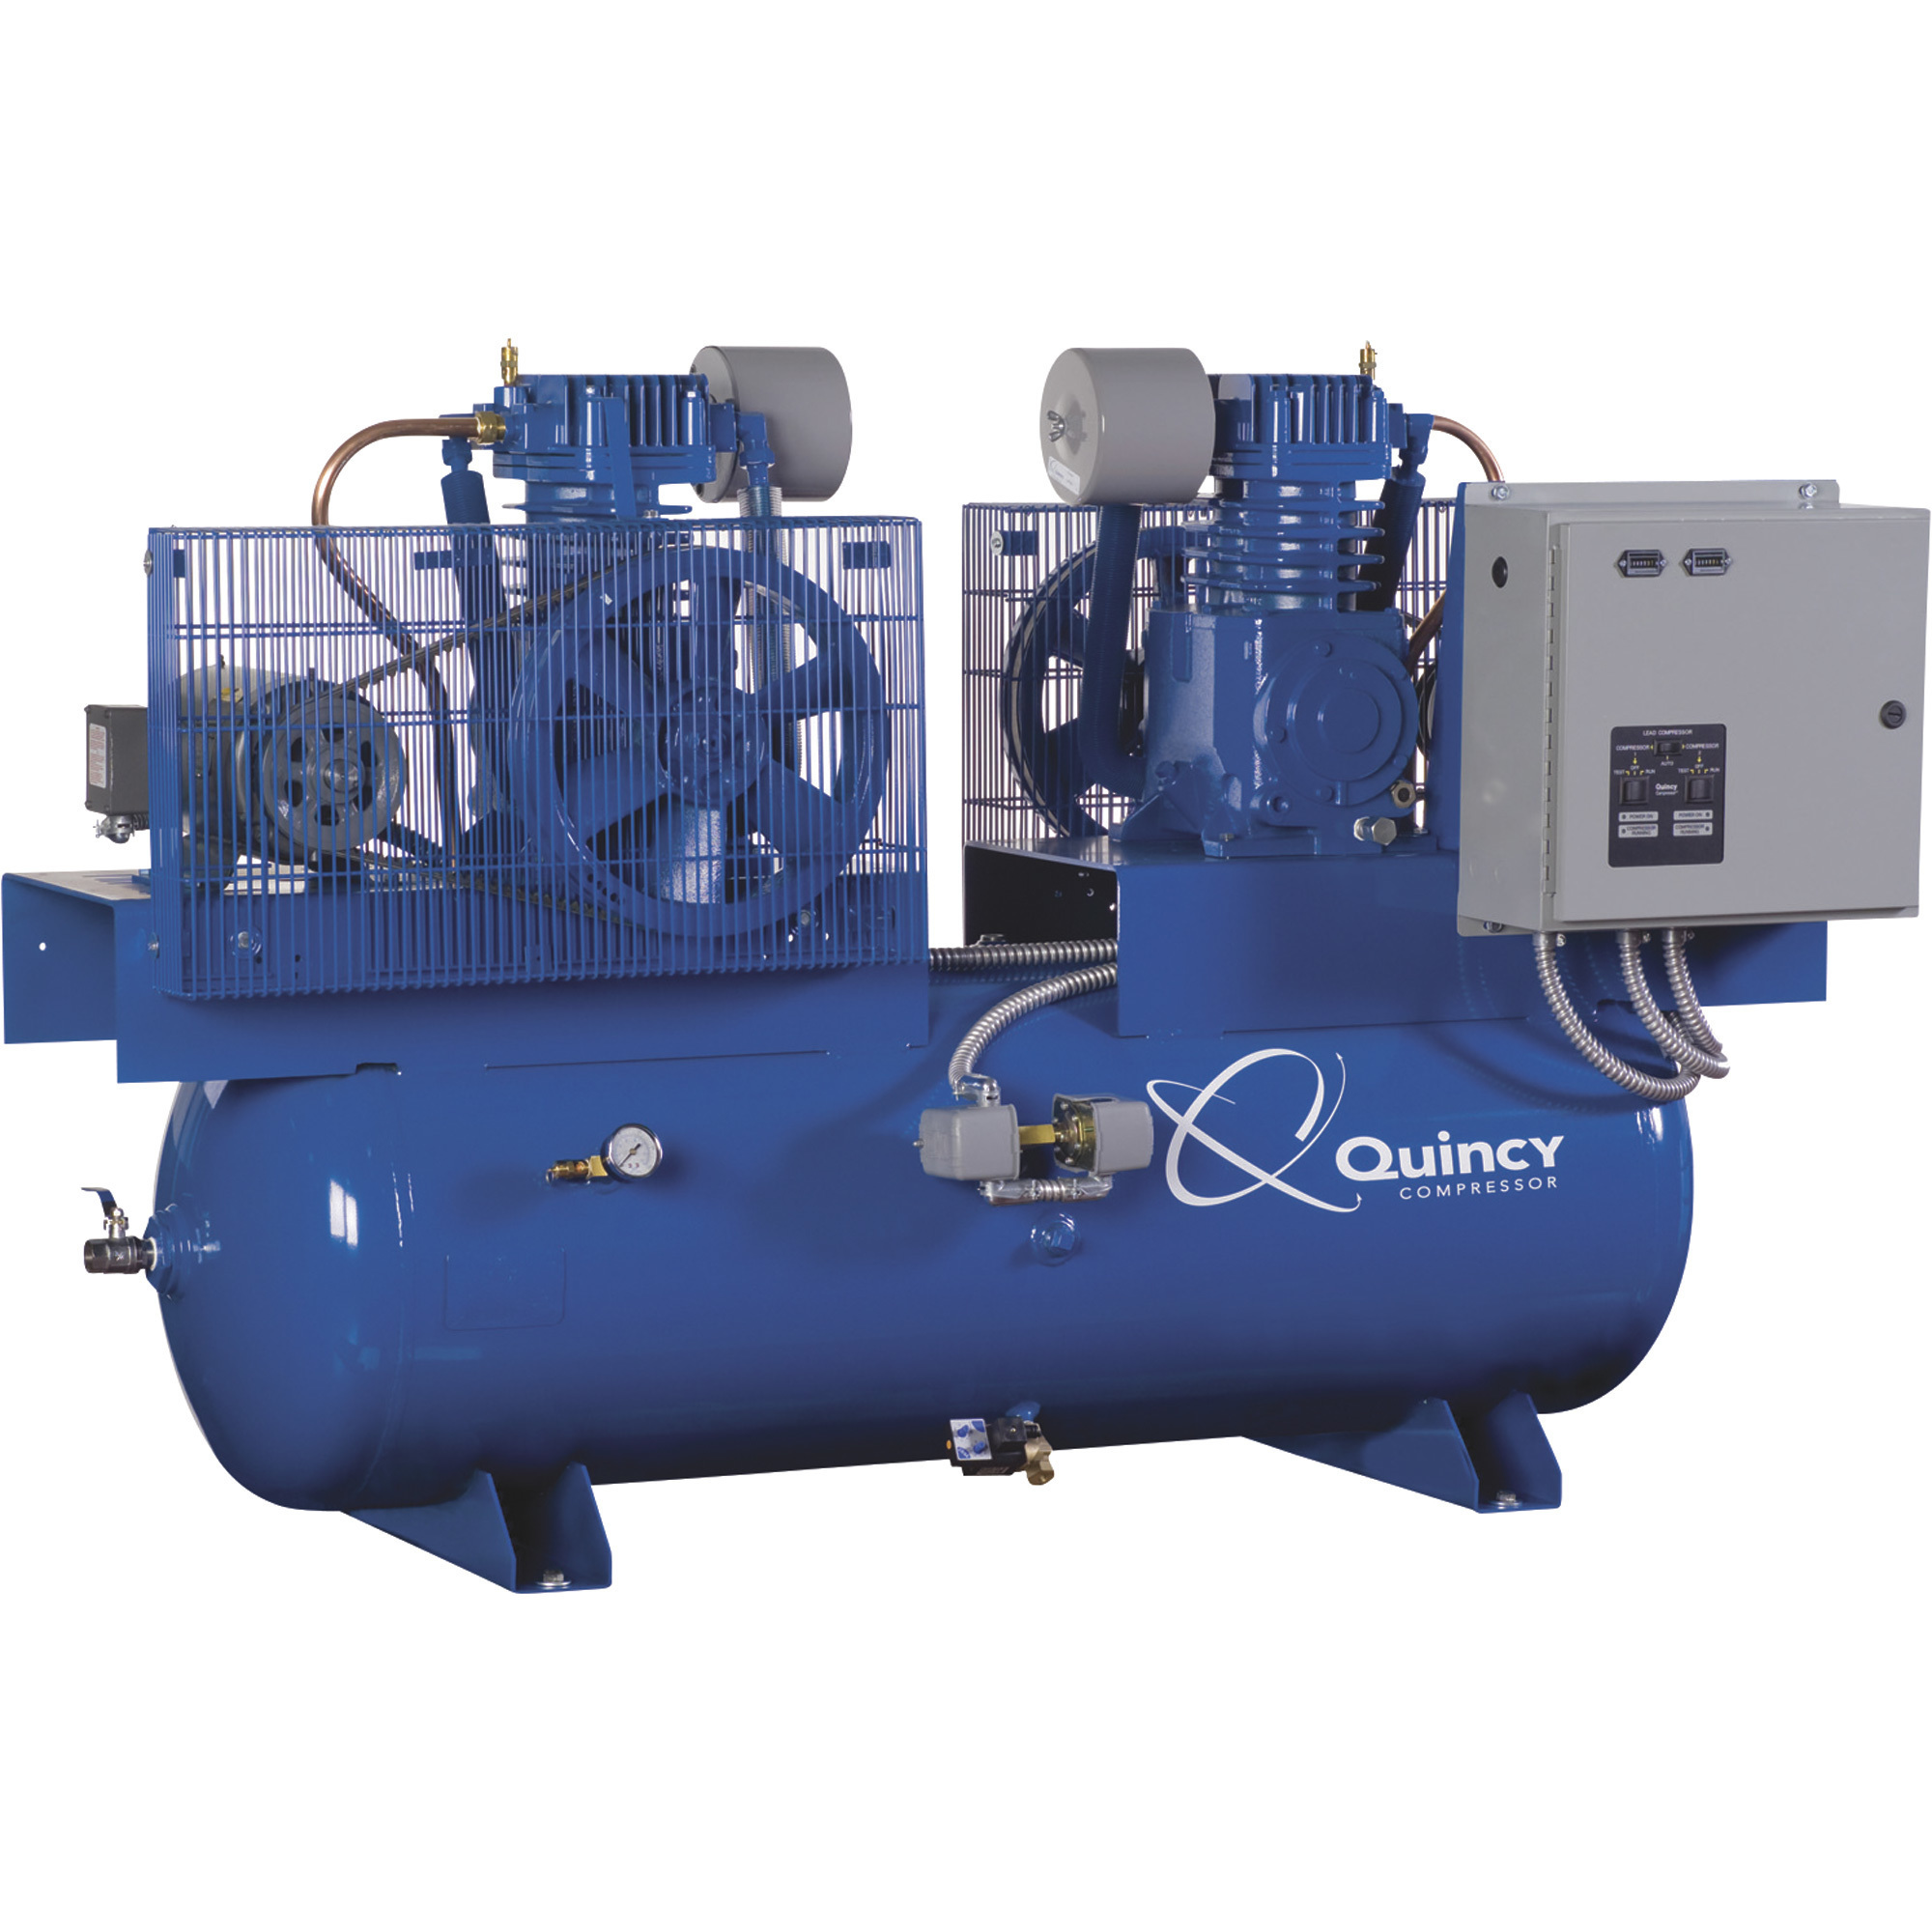 Quincy Compressor 2020013505